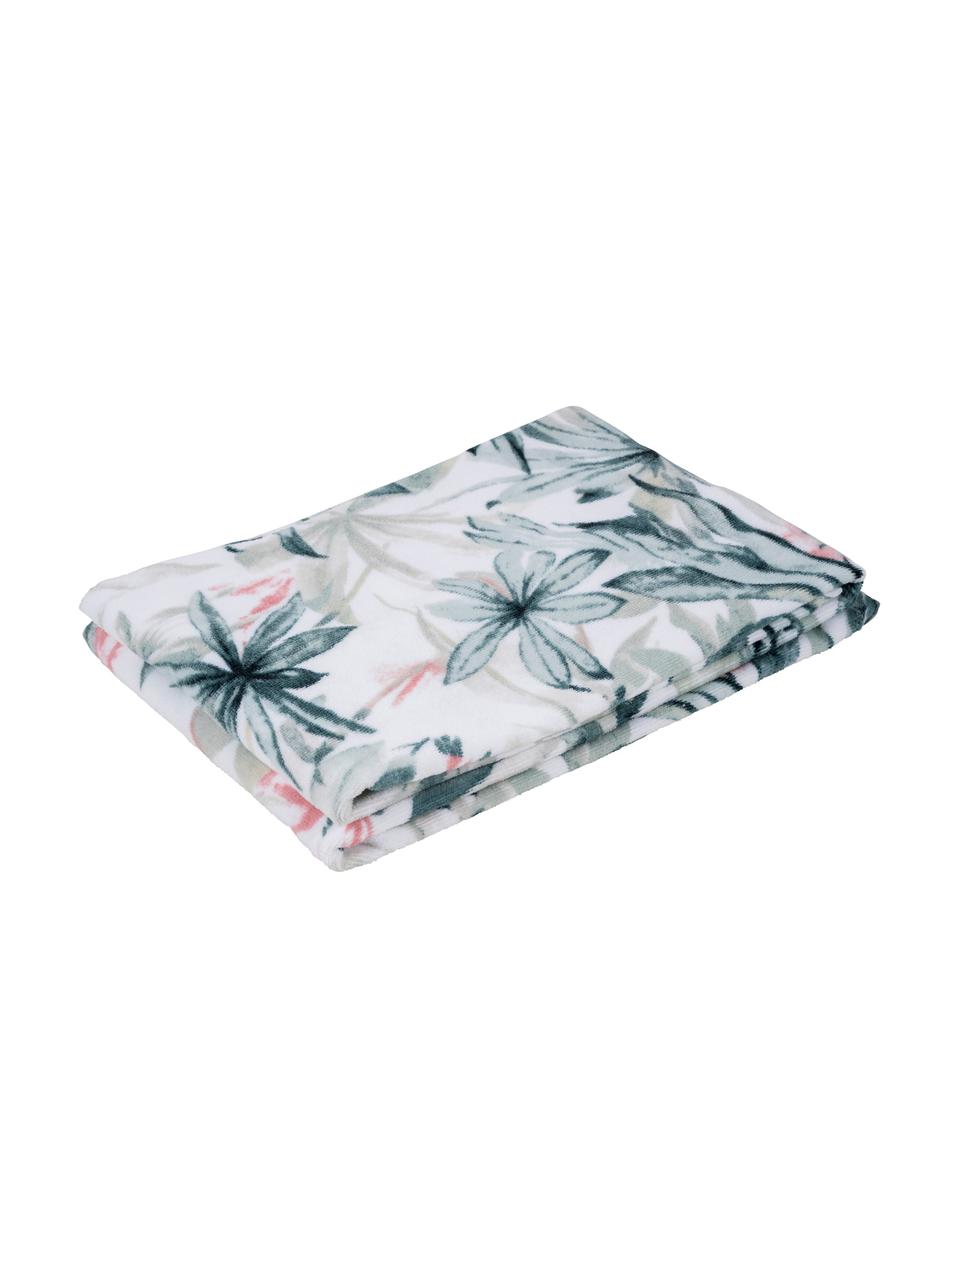 Handtuch Foglia in verschiedenen Größen, mit tropischem Muster, 100% Baumwolle, Weiß, Mehrfarbig, Gästehandtuch